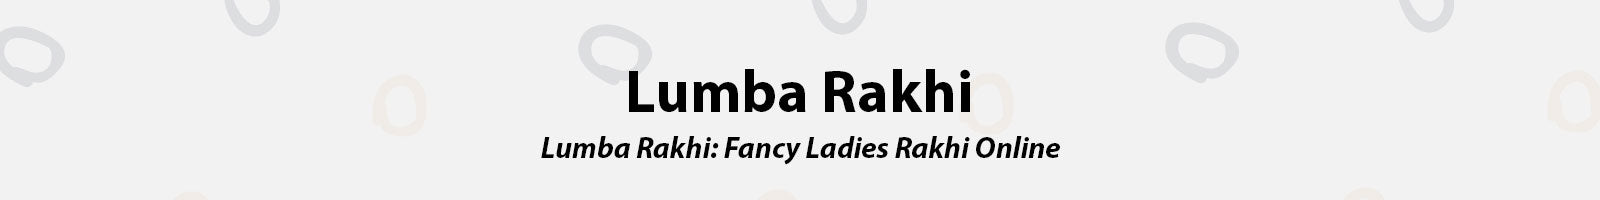 Buy Fancy Lumba Rakhi and Ladies Rakhi Online